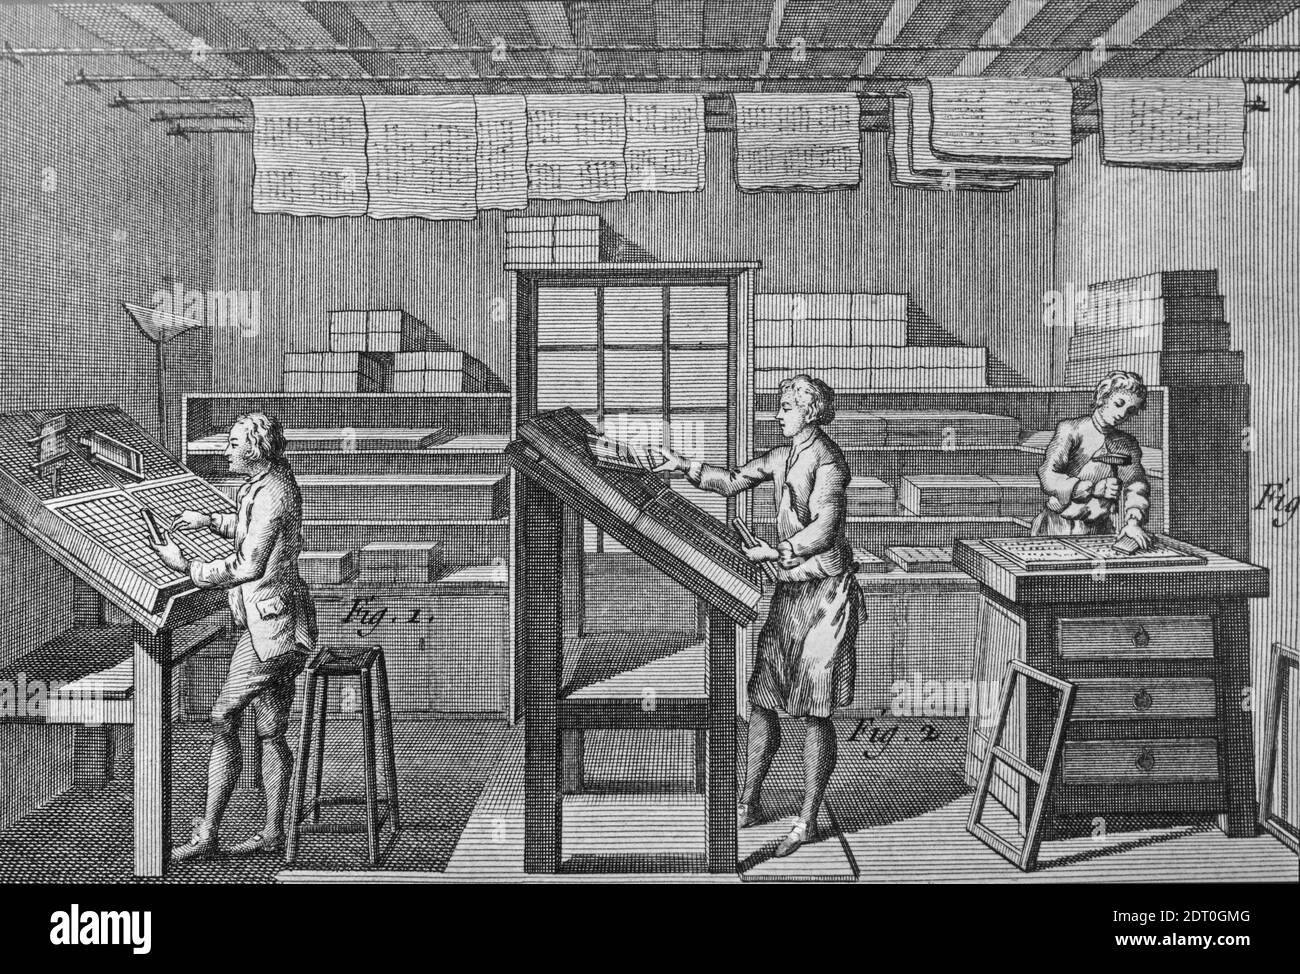 mecanógrafos del siglo 18 organizar tipos llamados composición tipográfica para la impresión de tipografía en la imprenta / oficina de impresión Foto de stock